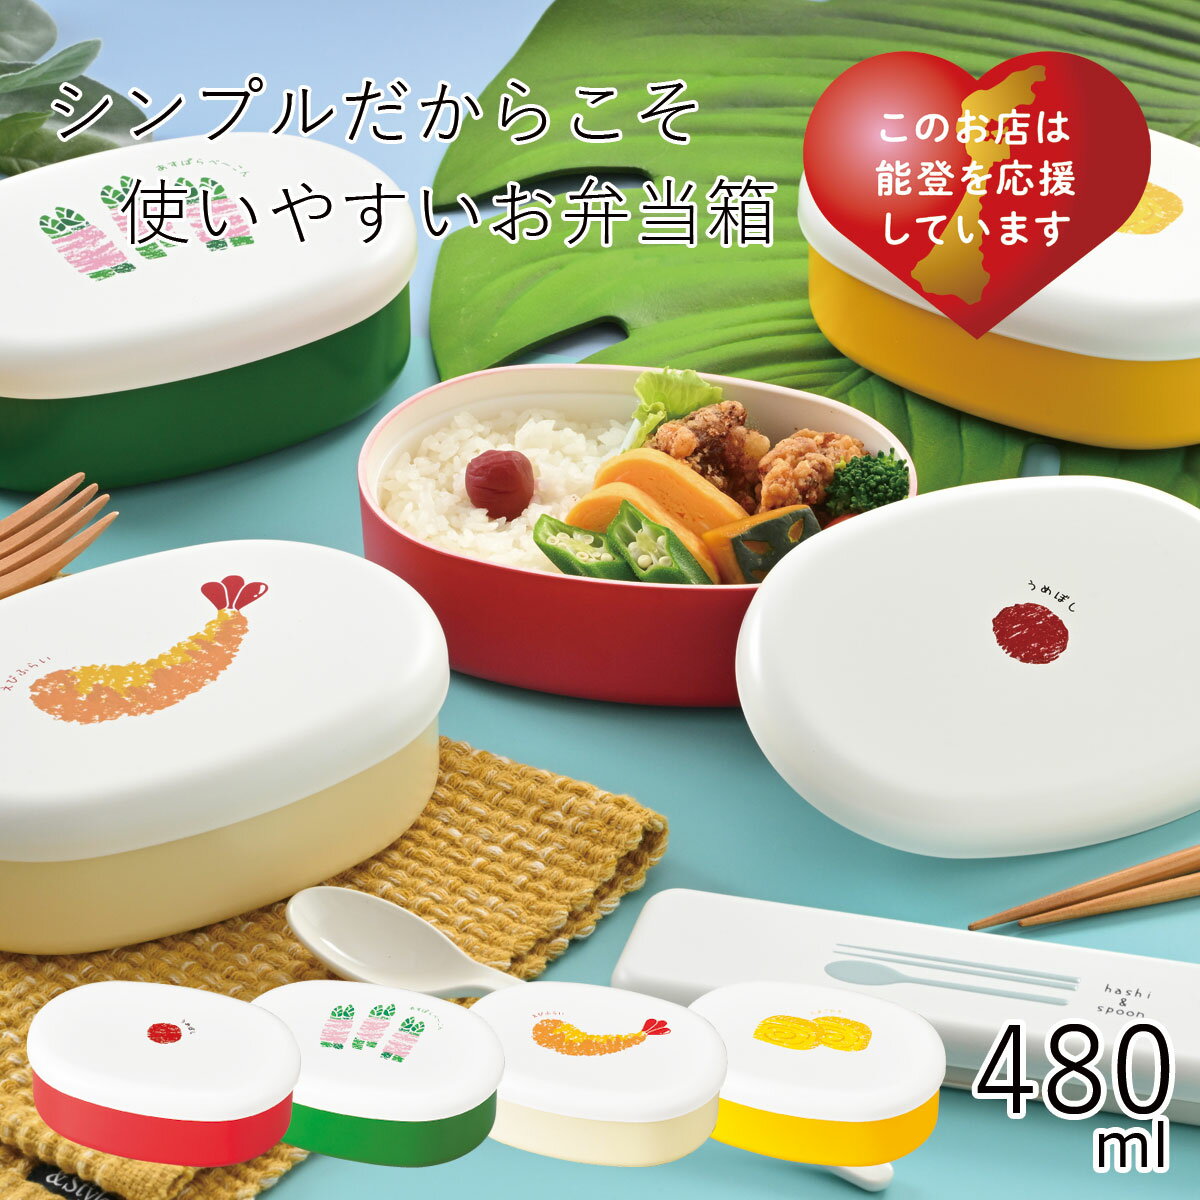 弁当箱”HAKOYA 小判一段弁当 OBENTO 480ml”おべんとー日本製お弁当箱 おしゃれ おかず テーブルコーディネート LUNCH BOX